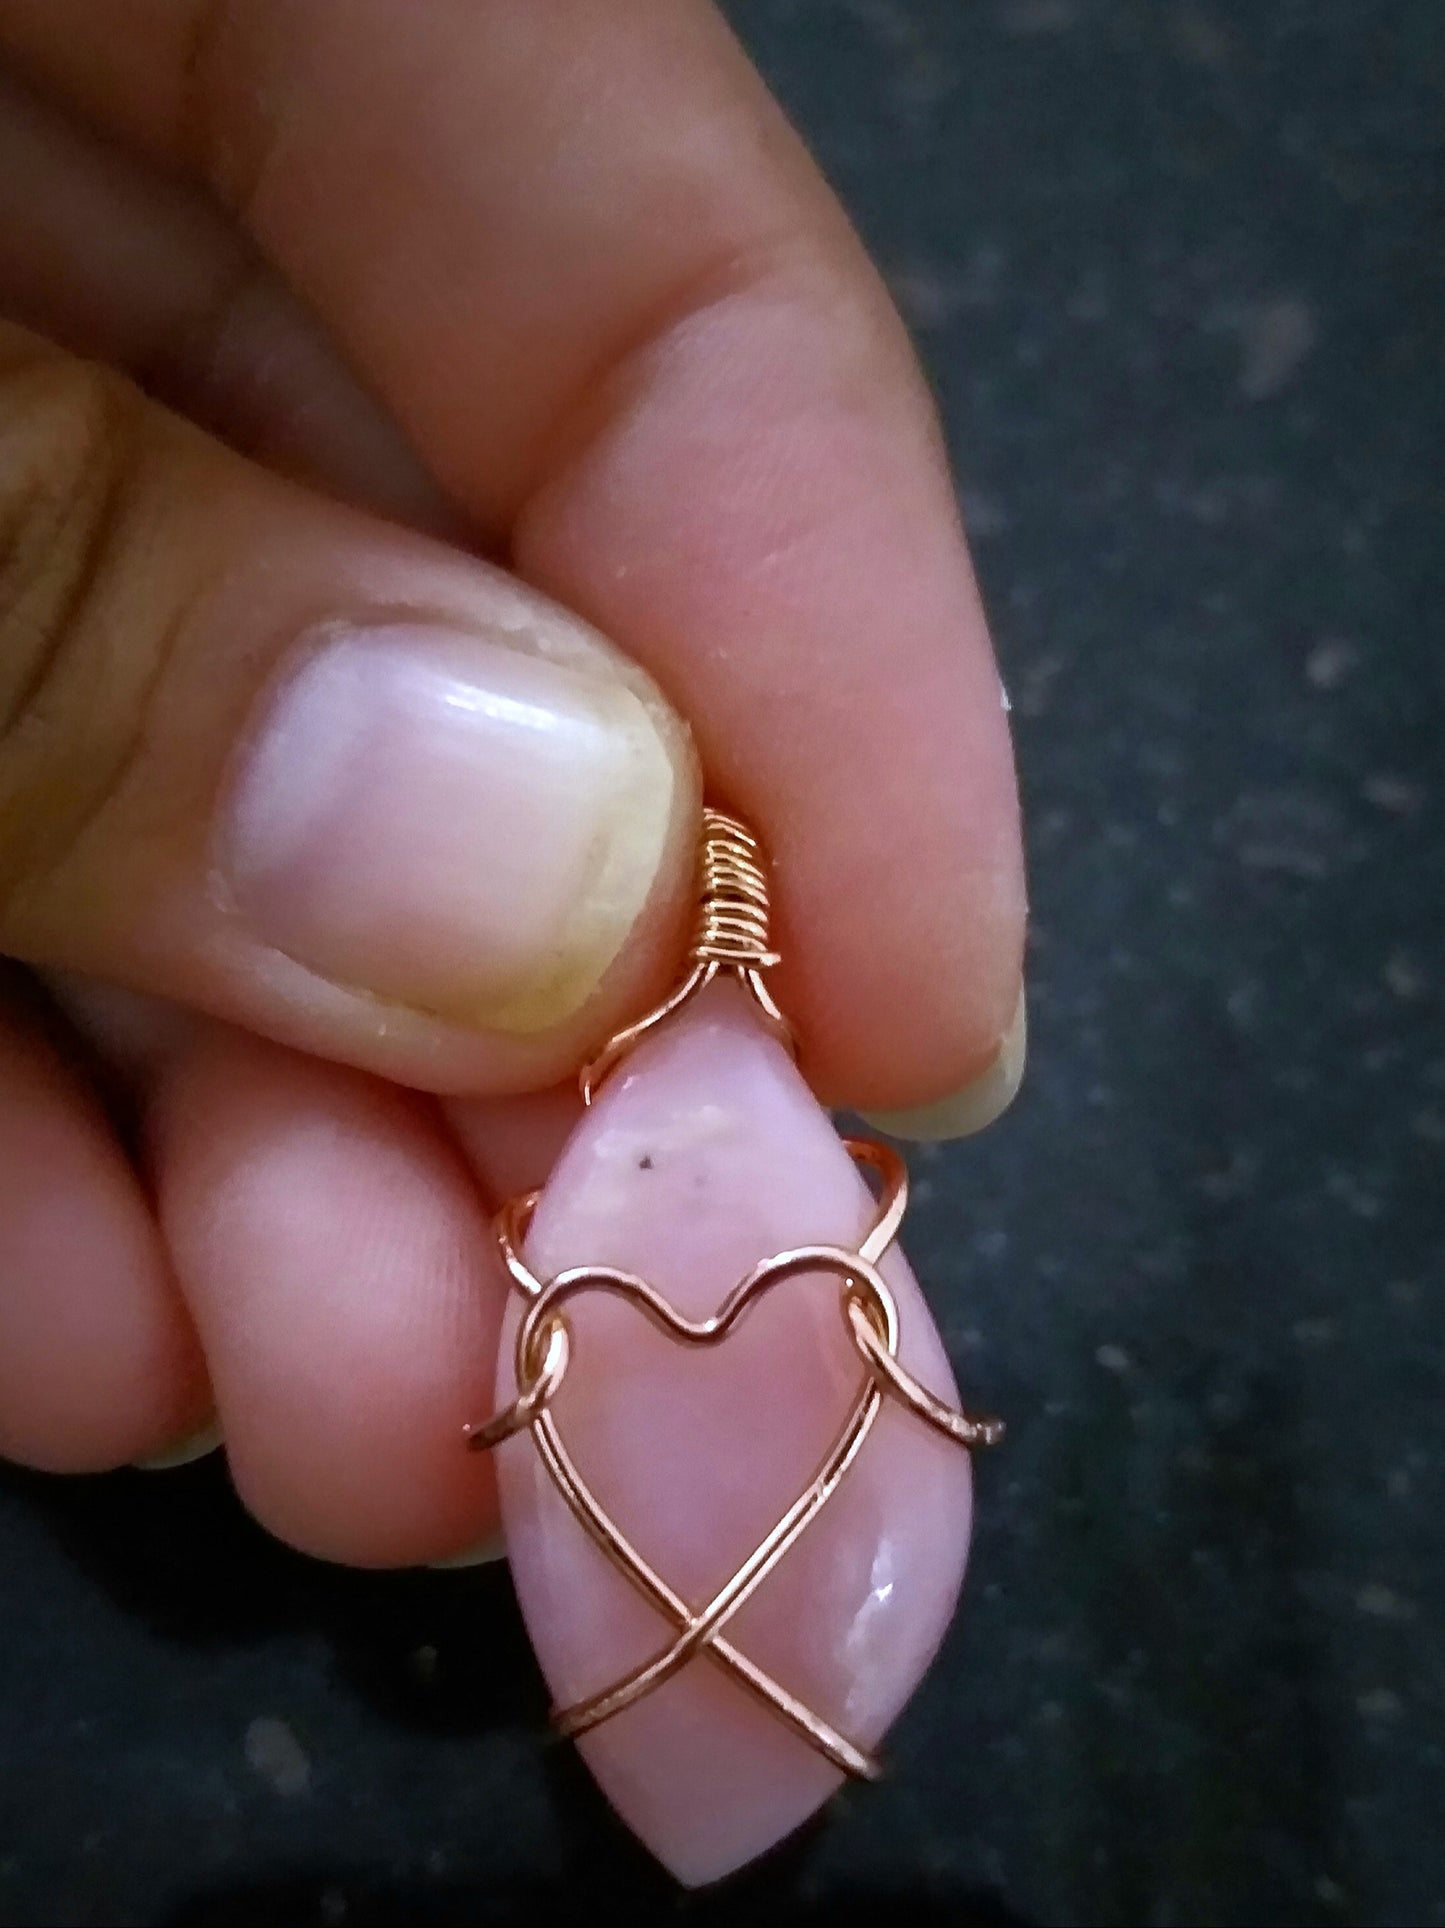 Pink Opal Fancy Shape Dainty Heart Pendant, Pink Gemstone Necklace